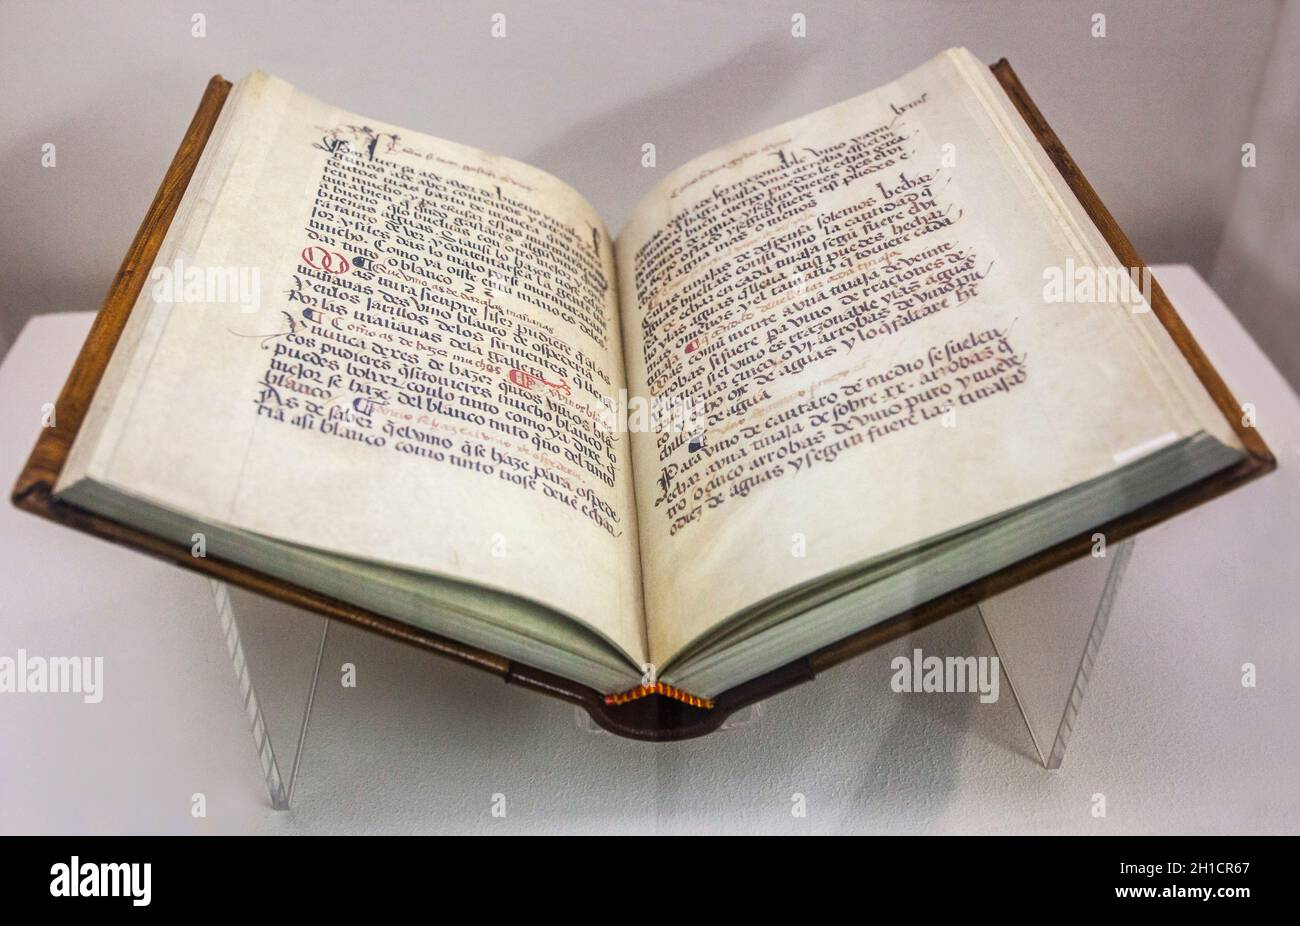 Almendralejo, Espagne - 26 janvier 2018: Livre de la cave dans le monastère de Guadalupe, considéré comme le plus ancien traité de vinification,1520. Vin Science Mus Banque D'Images